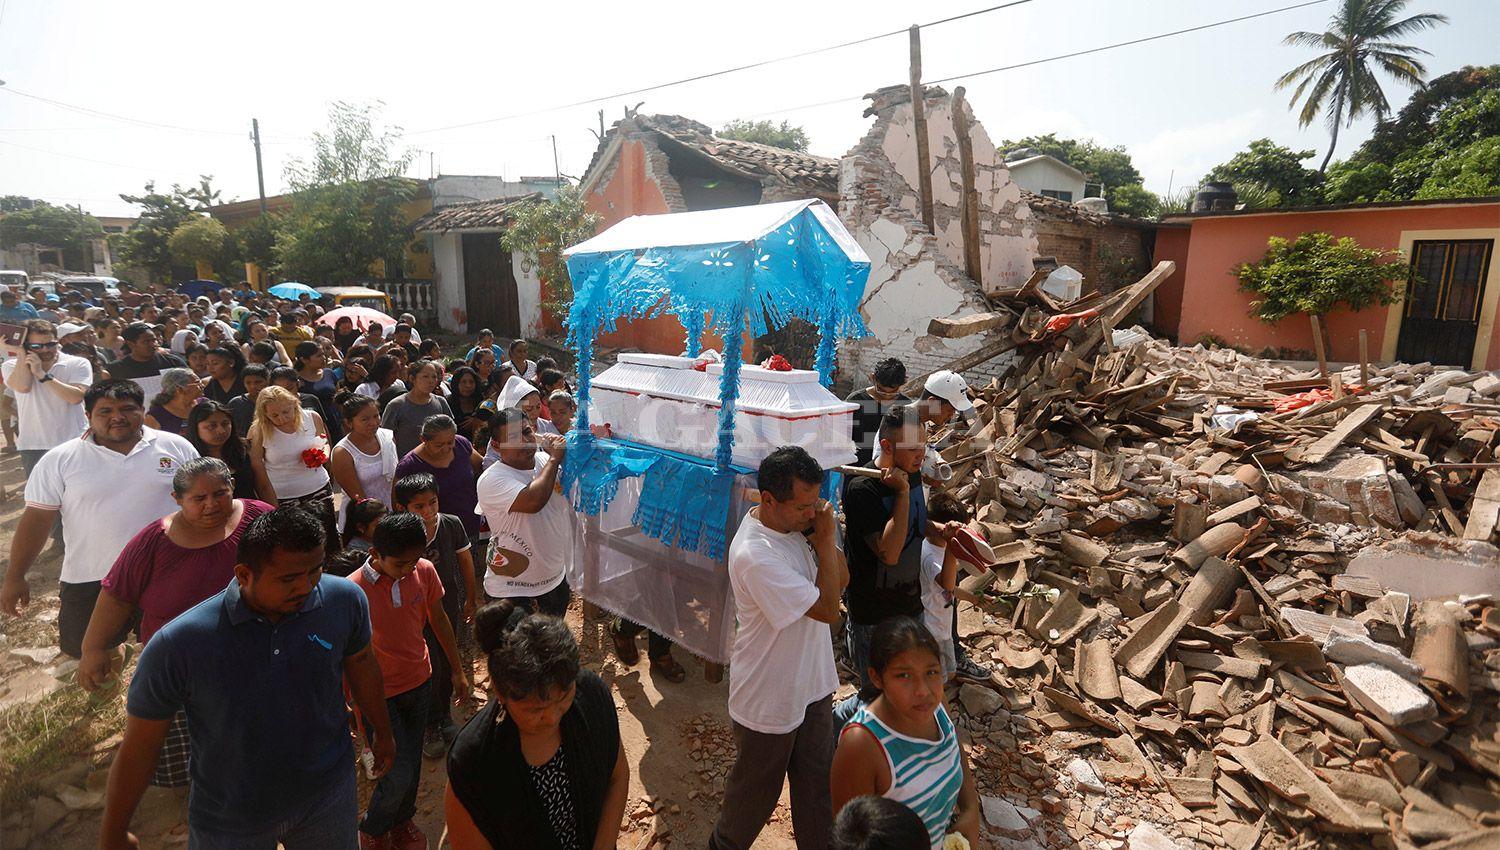 DESASTRE. El terremoto causó estragos en el sur de México. REUTERS